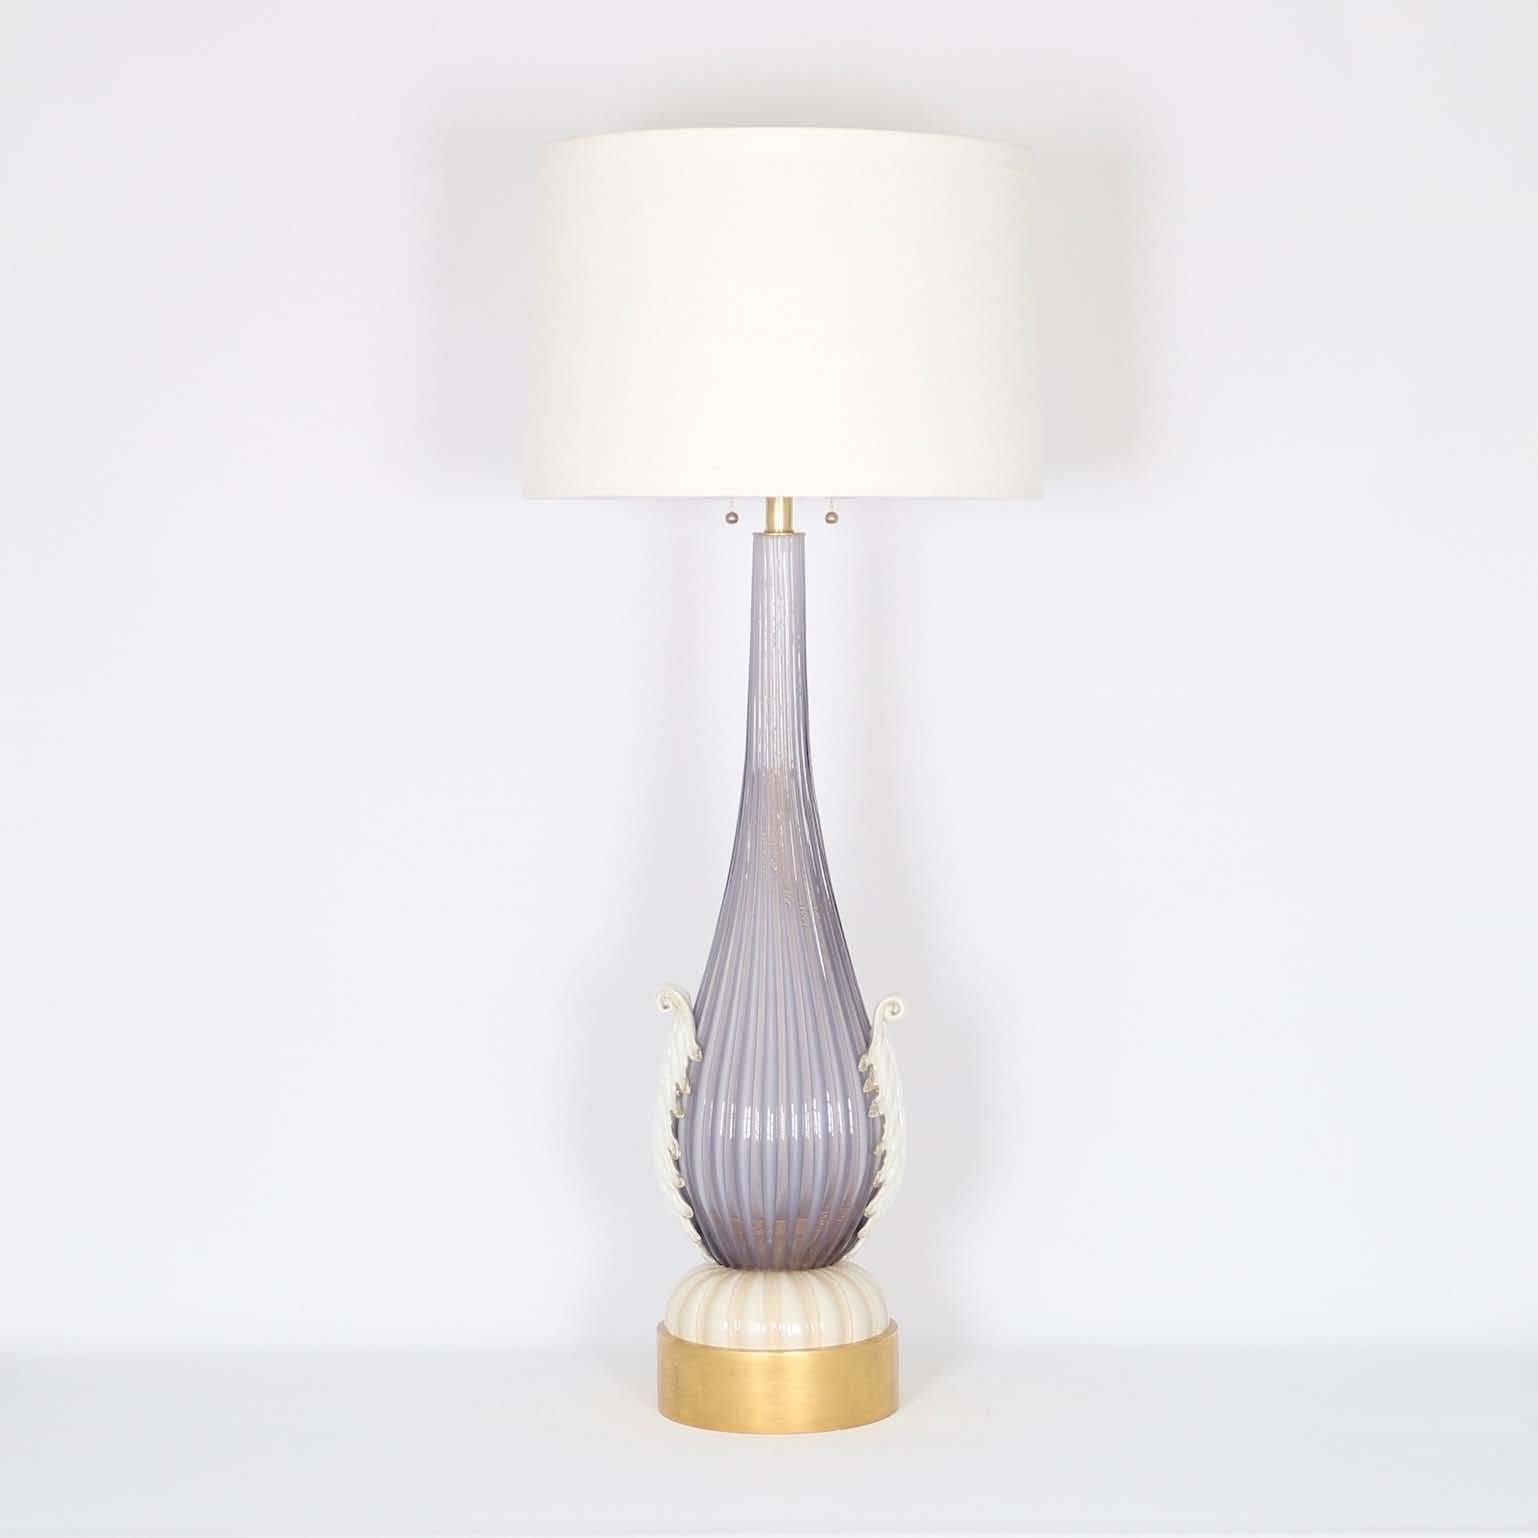 Italian Restored Monumental Murano Glass Lamp by Barovier